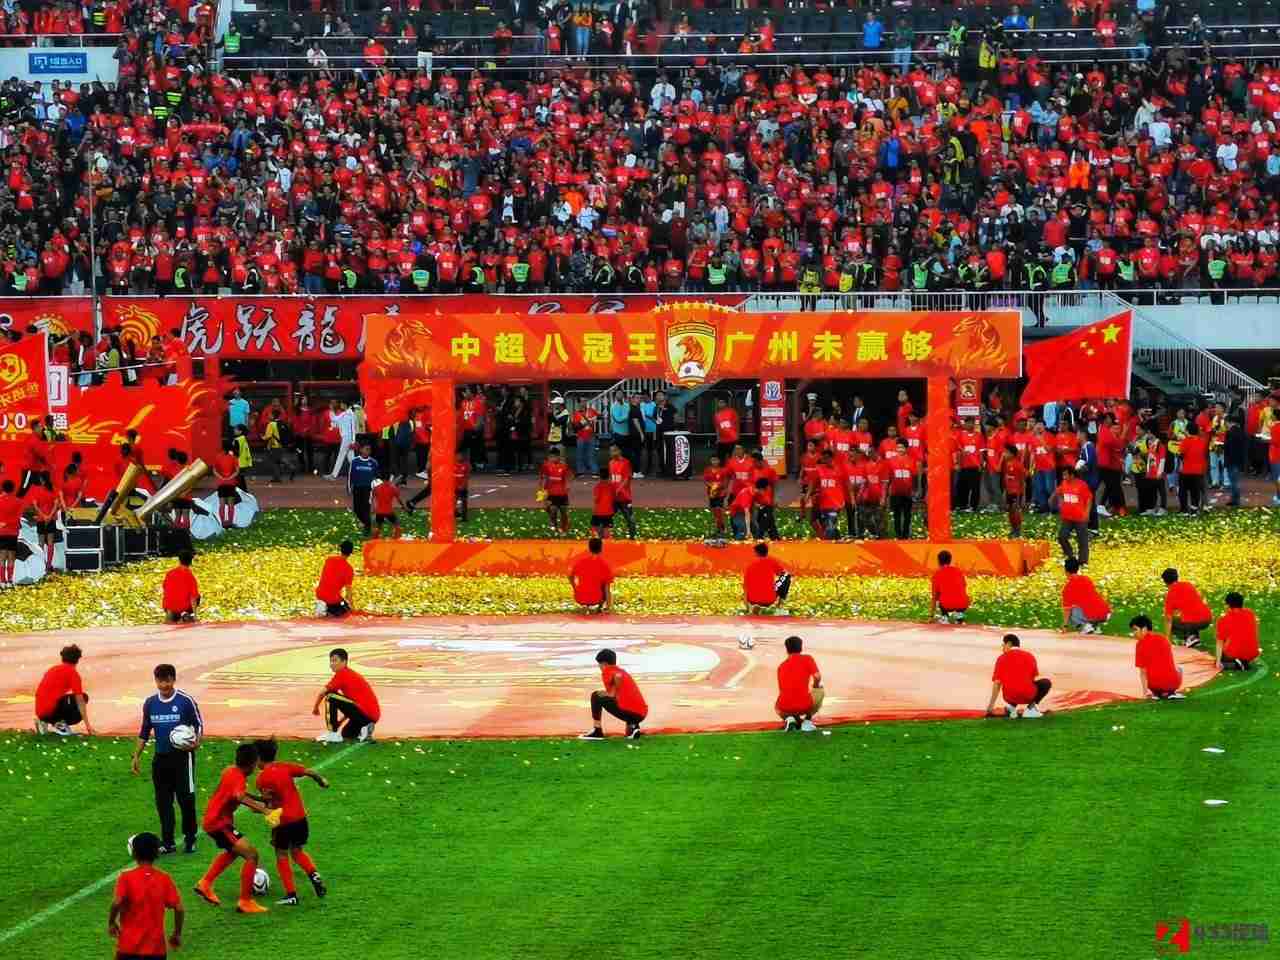 广州恒大,广州恒大已经初步确定更名“广州足球俱乐部”